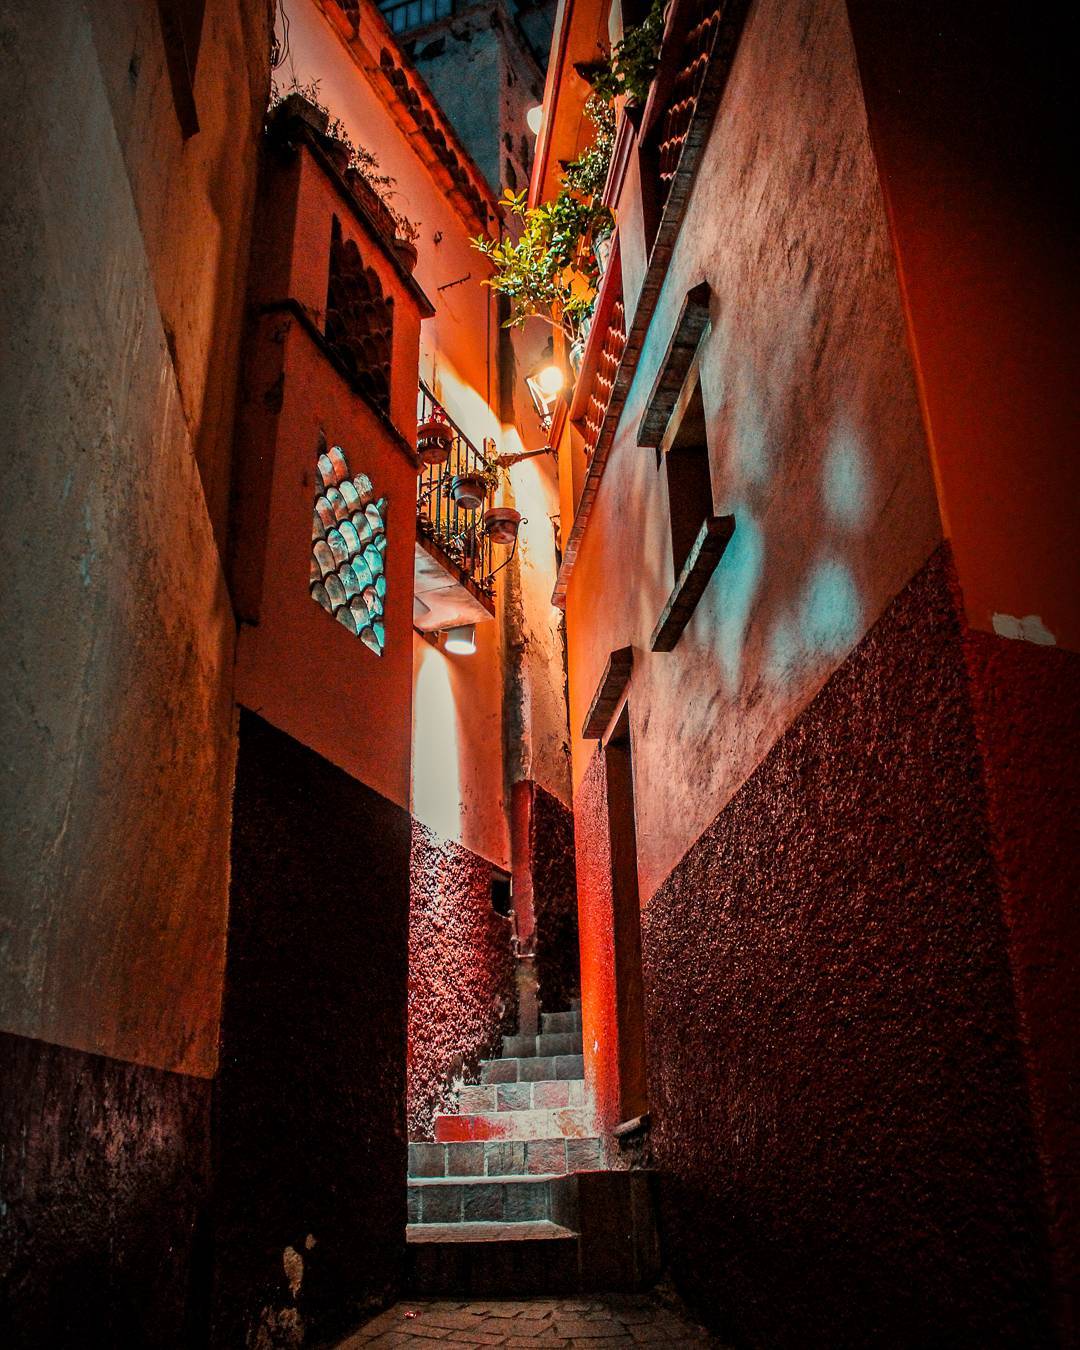 Guanajuato México on Twitter: "Uno de los lugares más visitados de #